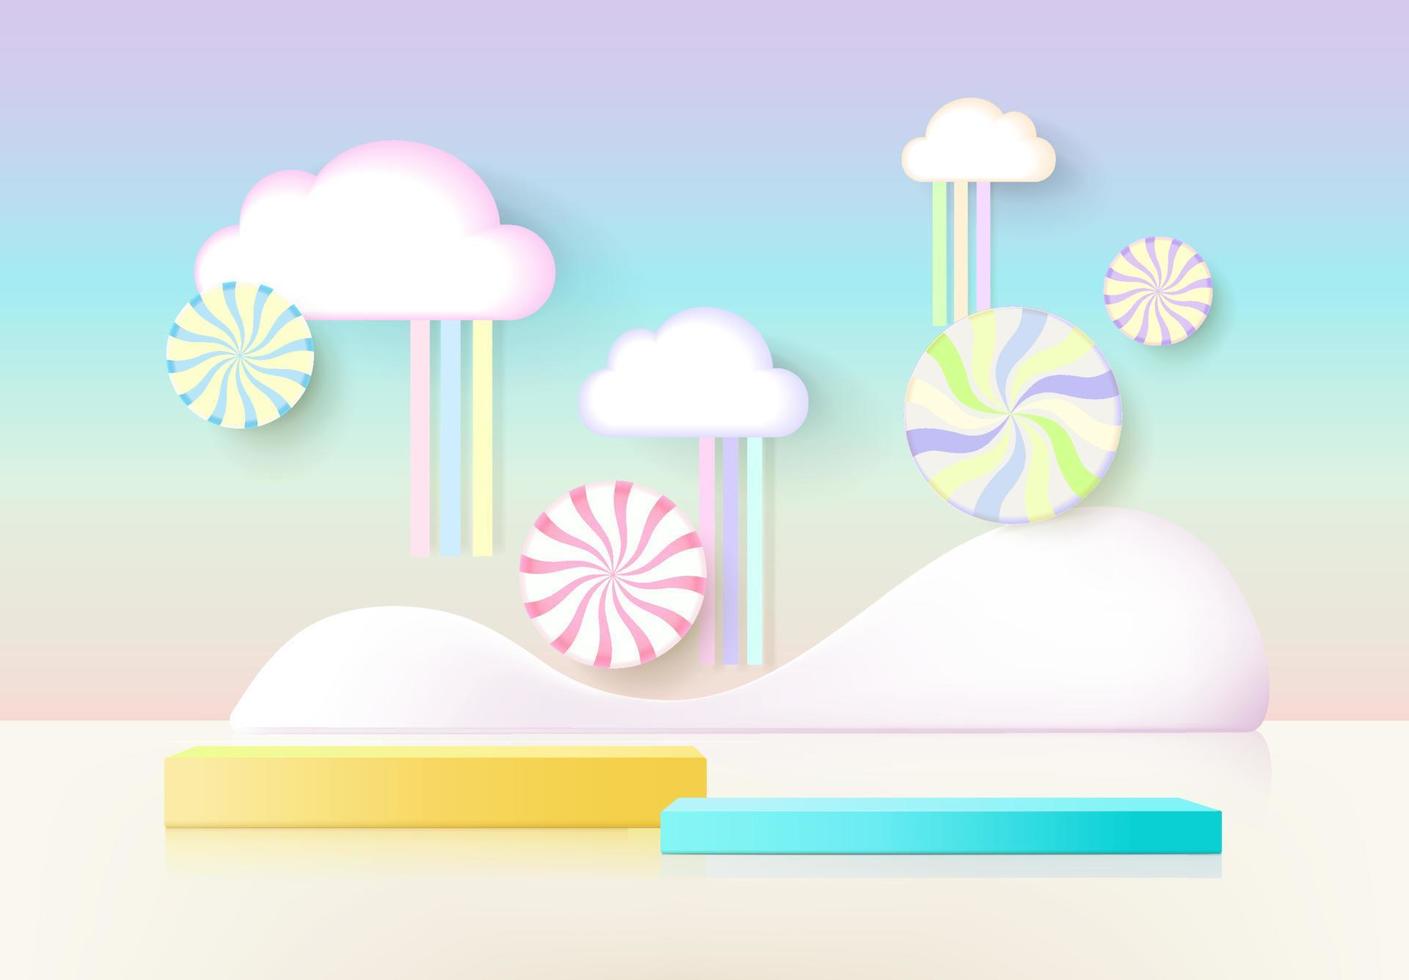 Estilo infantil de podio de renderizado 3d con fondo pastel colorido, nubes y clima con espacio para niños o productos para bebés vector